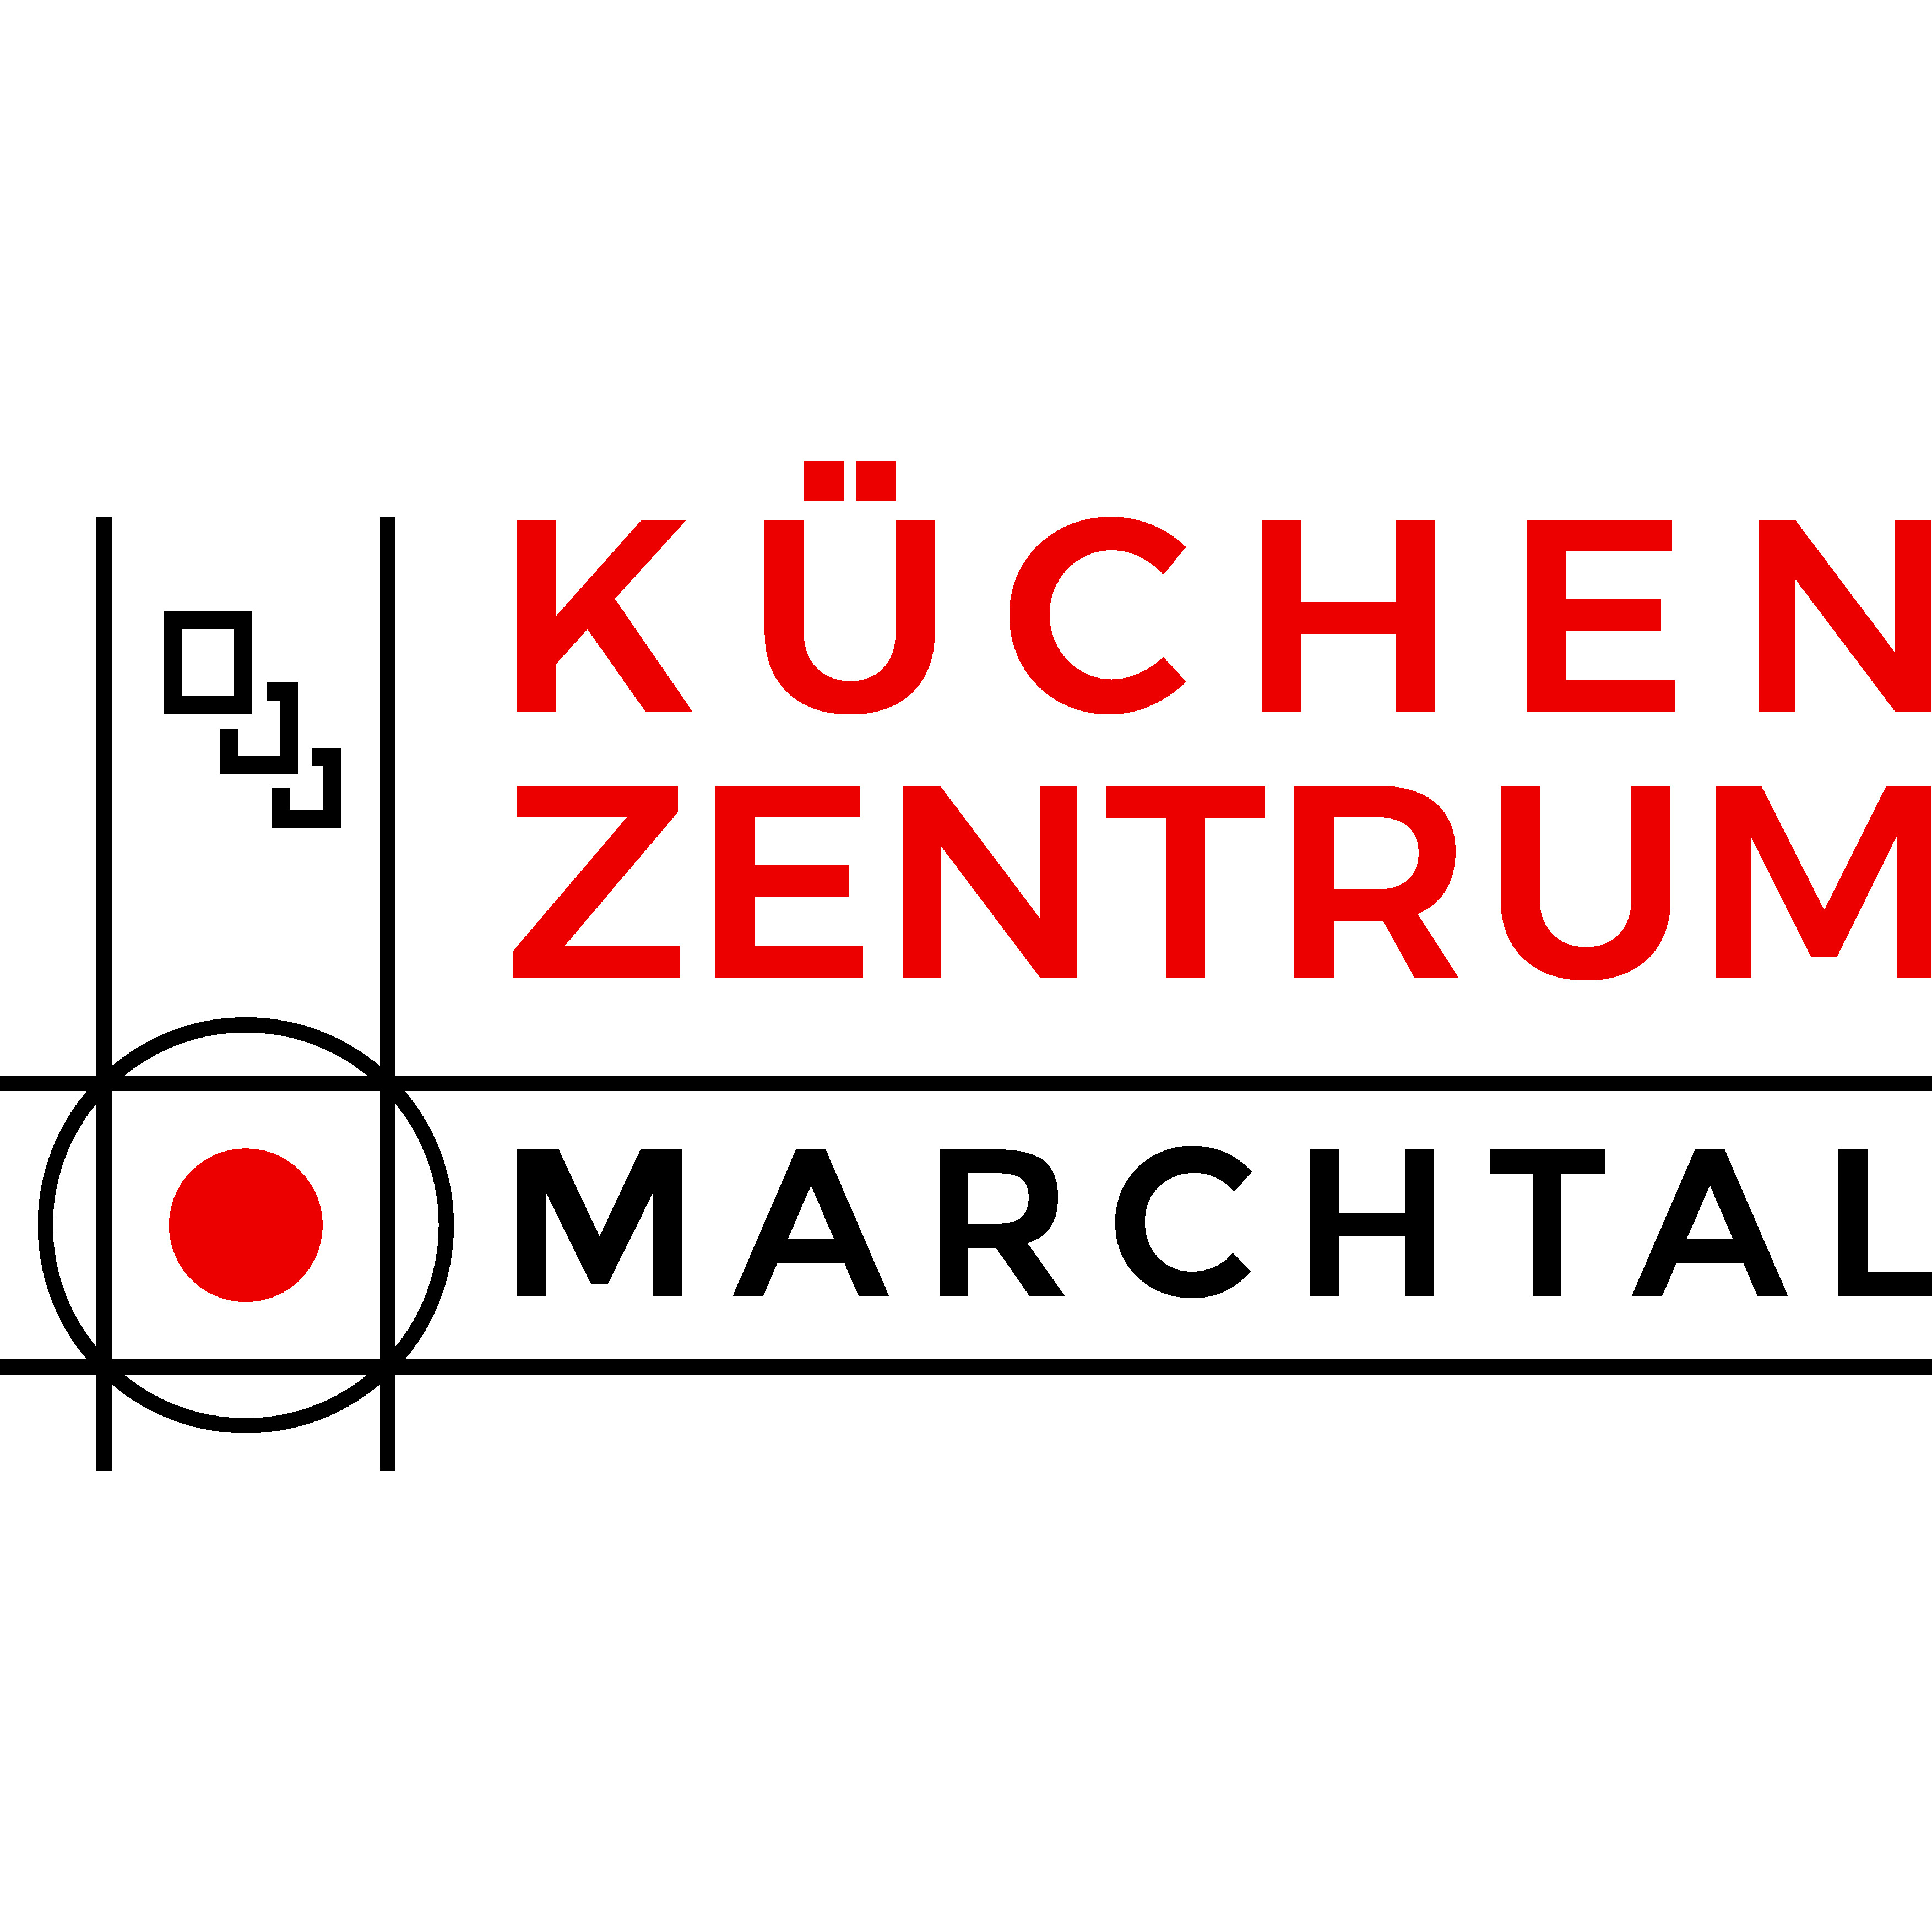 Küchenzentrum Marchtal Küchenstudio Echterdingen in Leinfelden Echterdingen - Logo